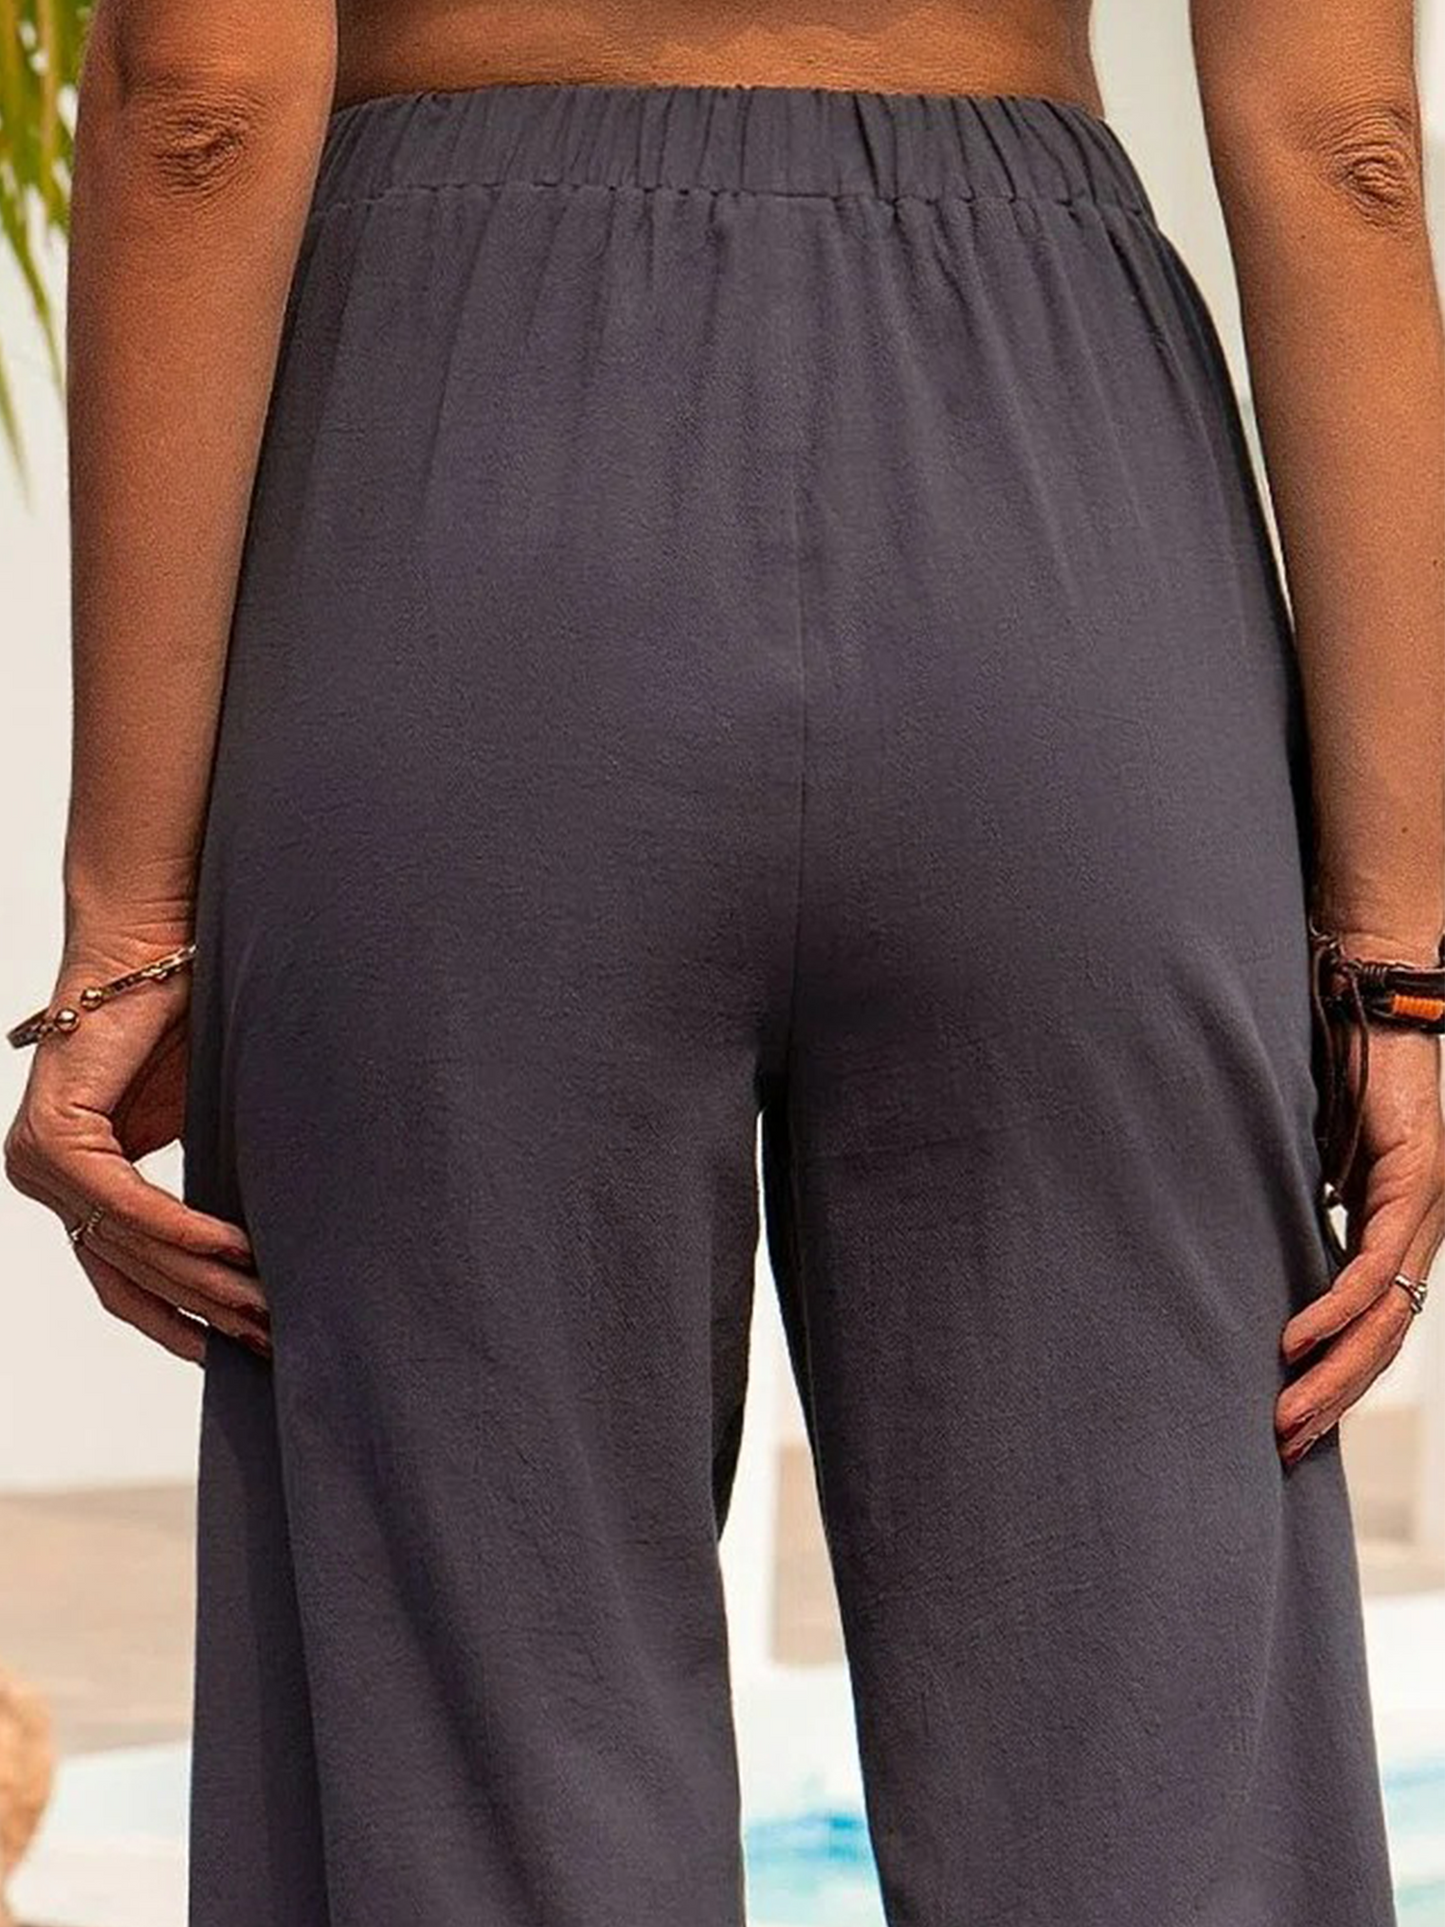 Women's Loose cotton linen casual pants